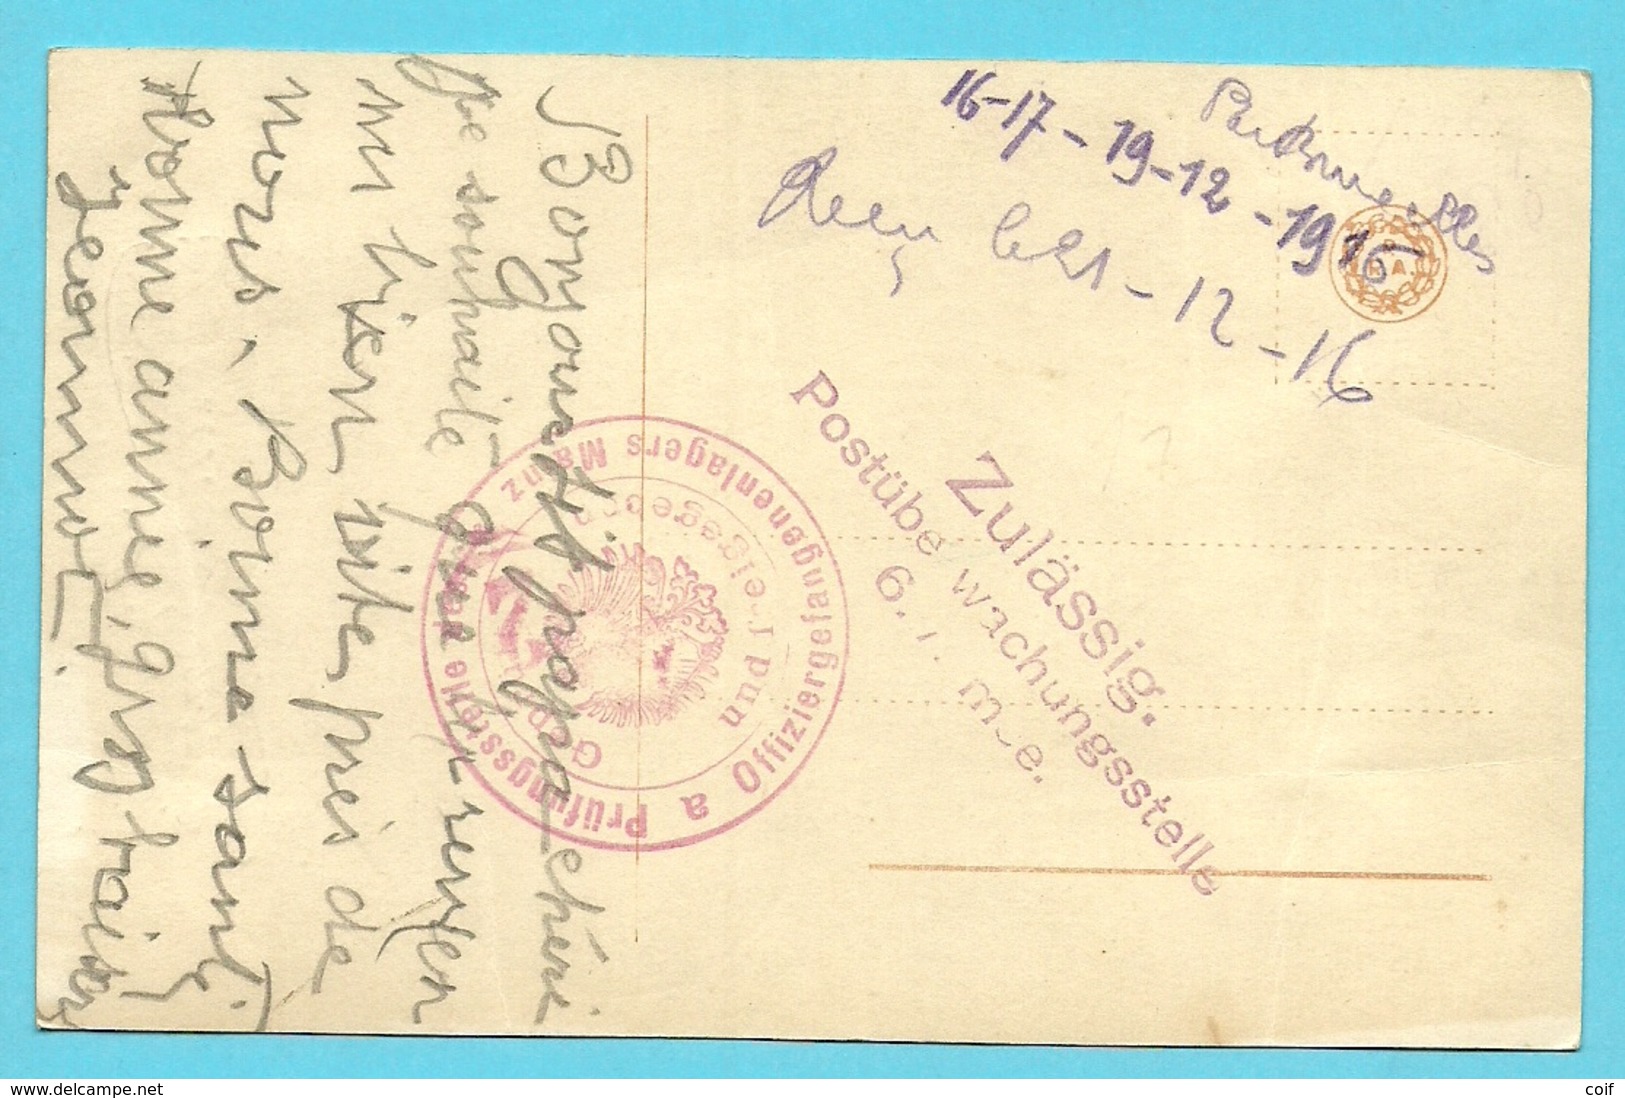 Kaart Met Stempel Van Offiziergefangenenlager MAINZ + Zulassig / Postuberwachungsstelle / 6.Armee - Krijgsgevangenen